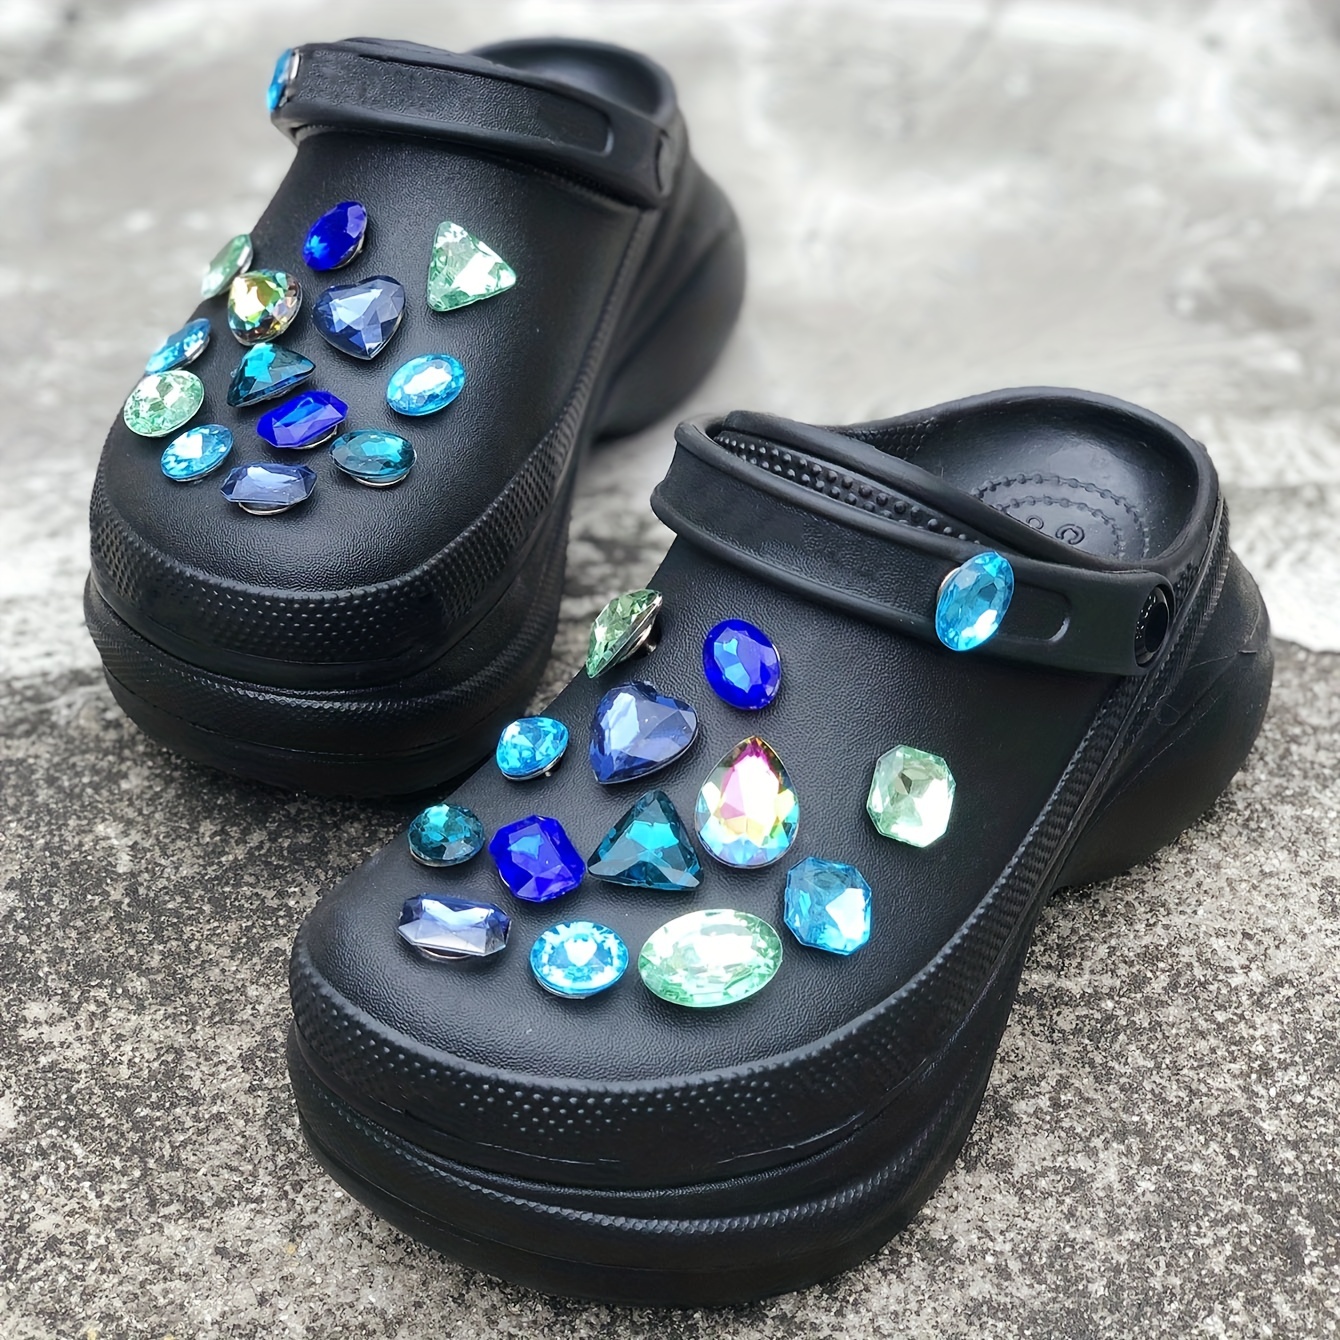 20pcs Cars Theme Shoe Charms Cartoon Shoes Decoration For Kids Boys Girls  Diy Croc Clog Sandals Bracelet Decor Accessories Party Favors